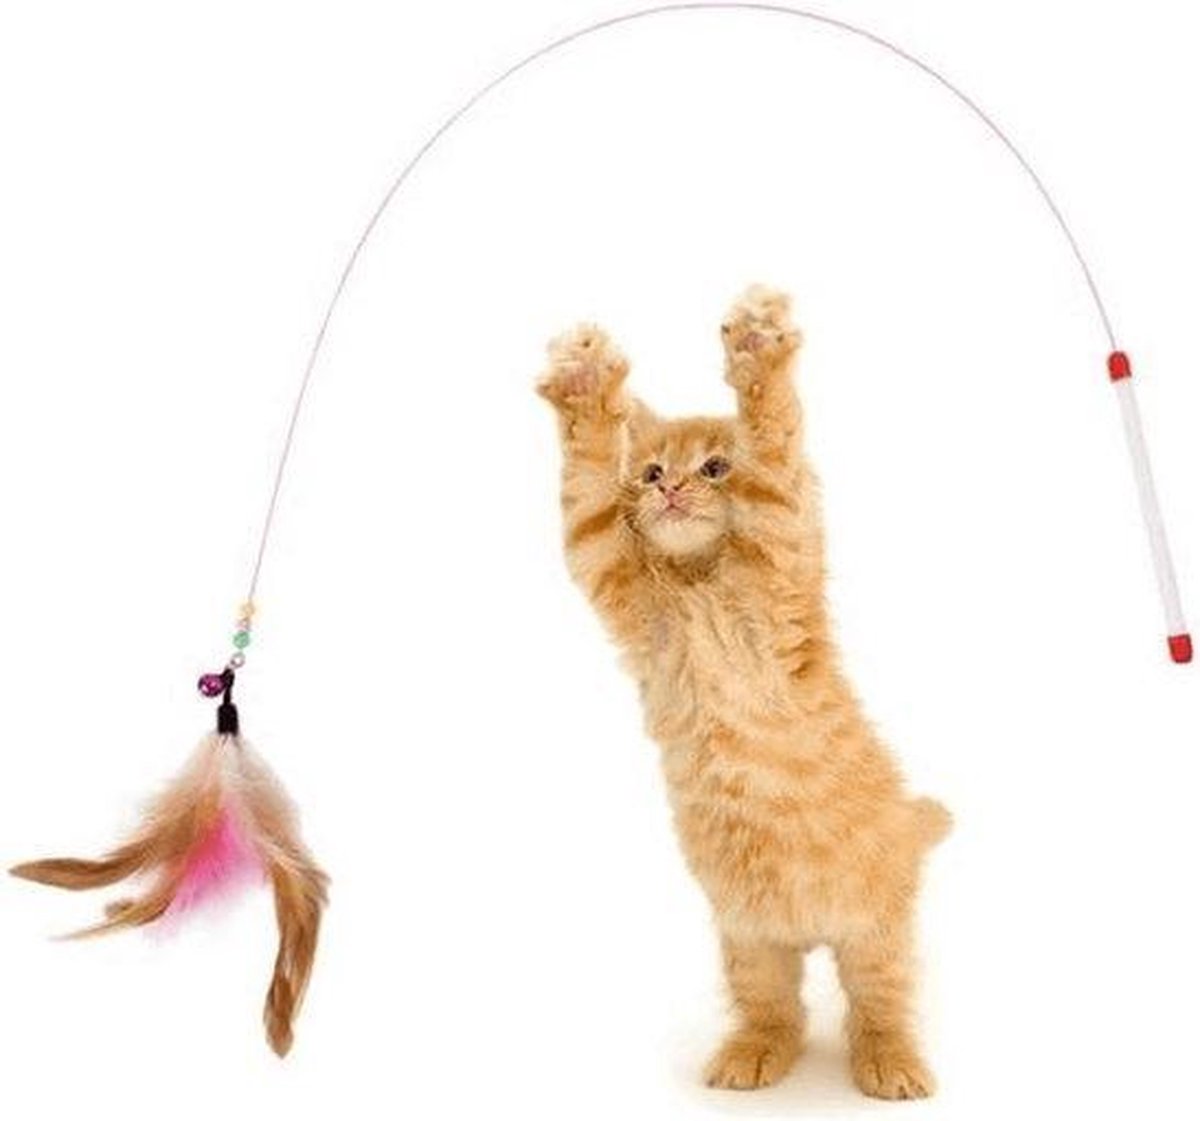 Kattenhengel - Interactief Speelgoed Kat - Kattenspeeltje - Kattenhengel Met Led Laser - Interactieve Kattenhengel -  Interactive Cat Toy - Speeltje Kitten - Multifunctioneel speelgoed kat - Merkloos